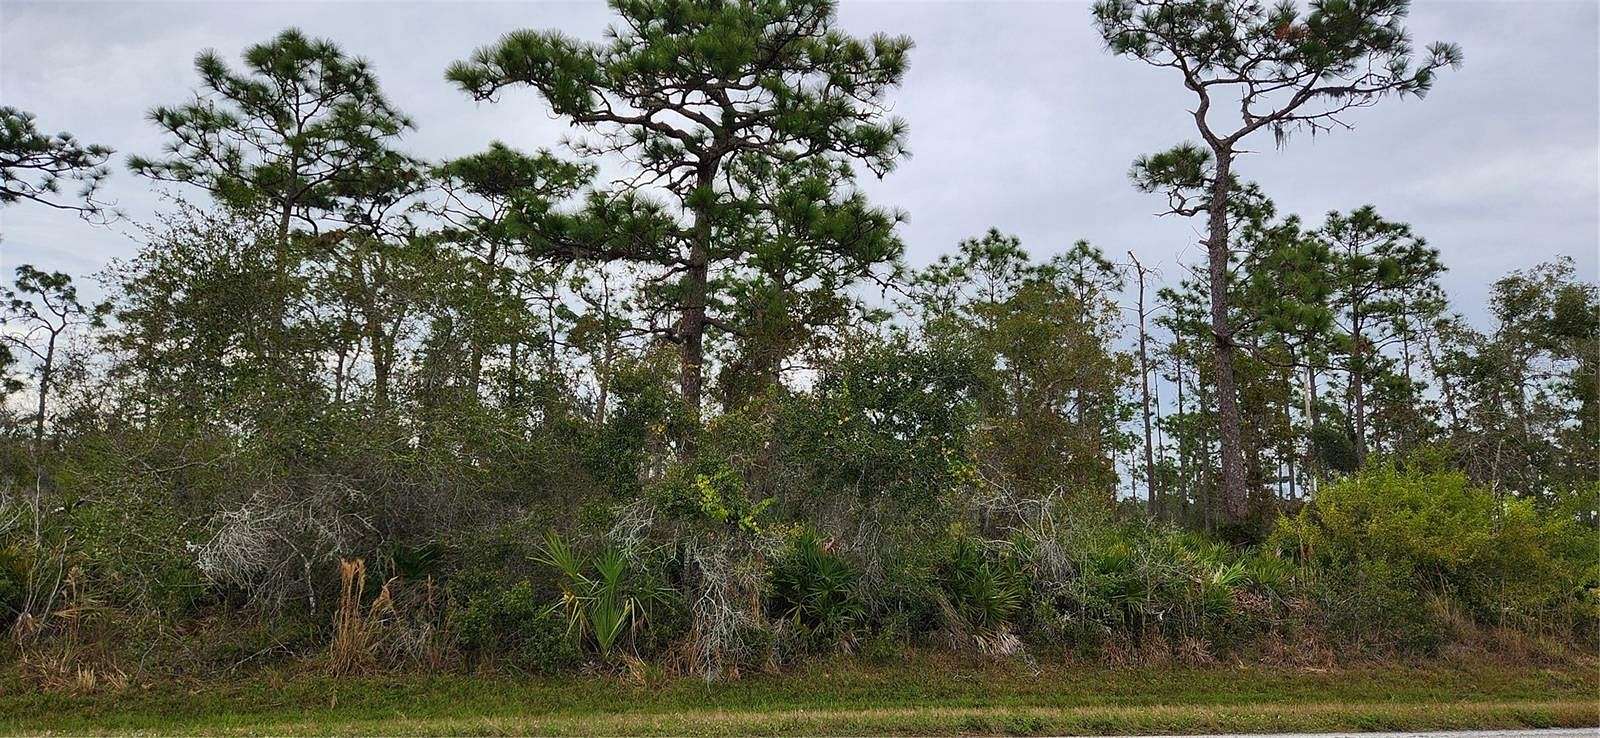 11.7 Acres of Land for Sale in Punta Gorda, Florida